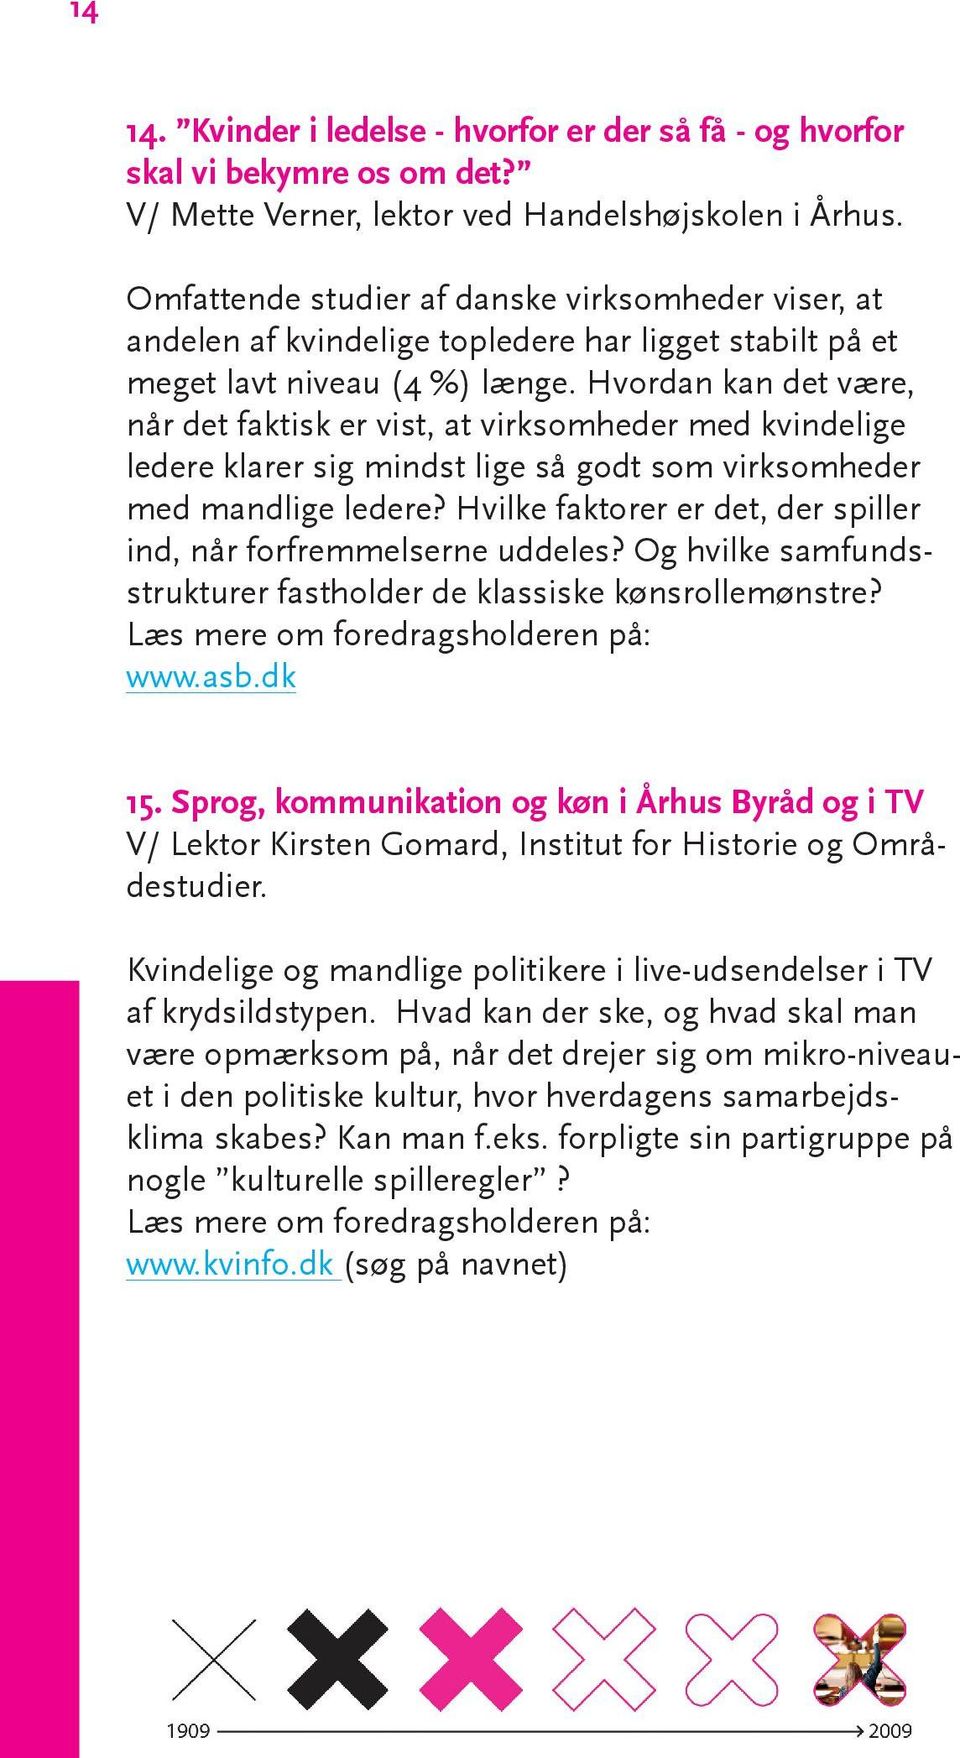 Ja, siger de kvindelige politikere - i hvert fald inden for Christiansborgs mure. Anderledes ser det ud i medierne.